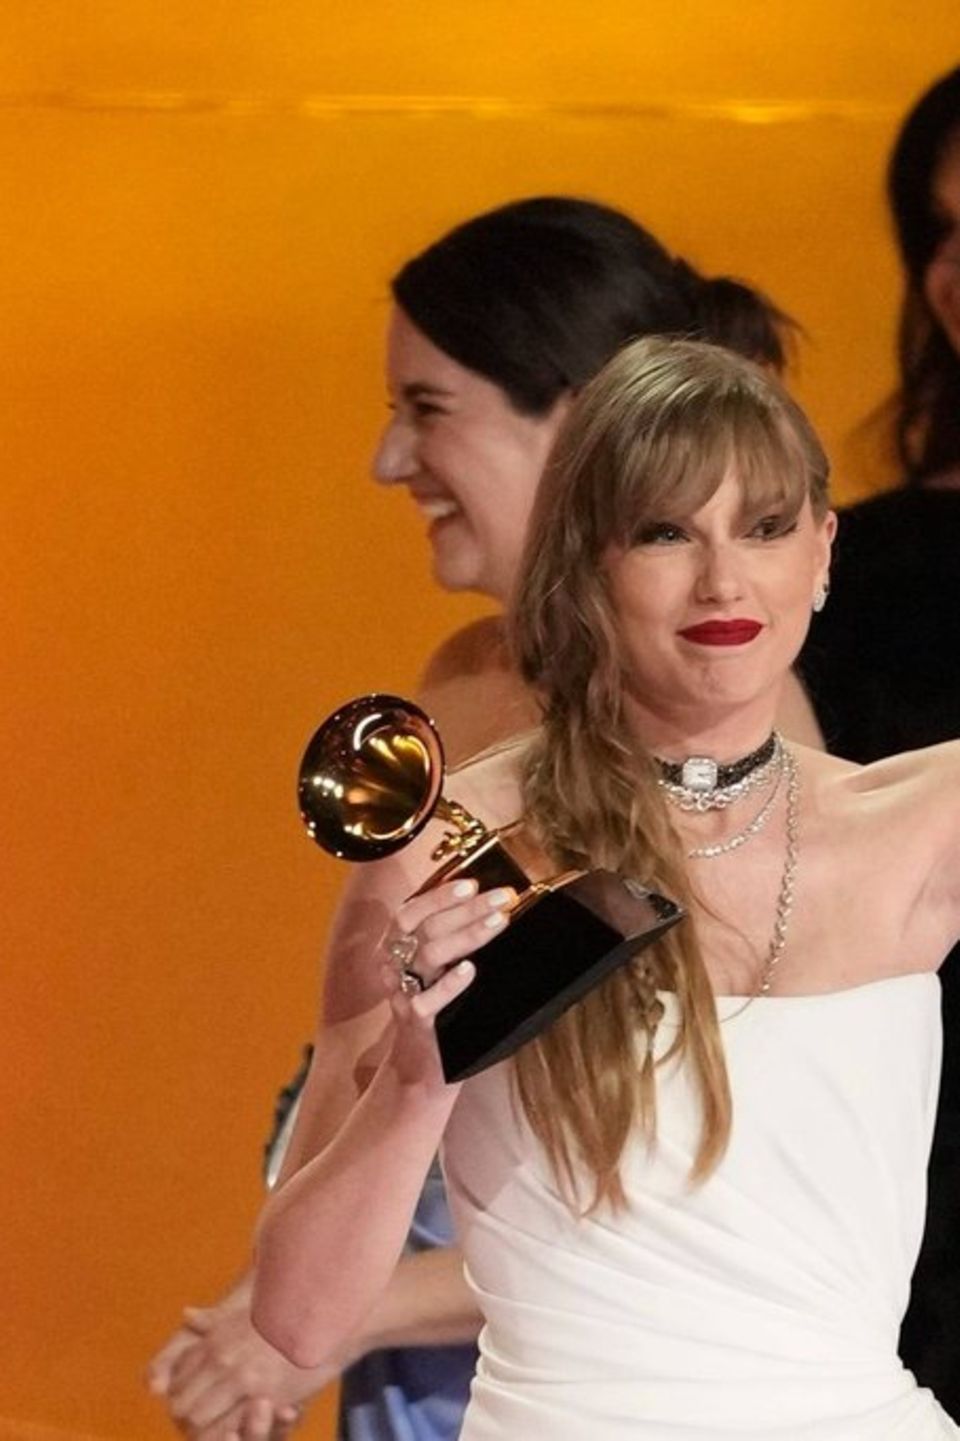 Taylor Swift schreibt bei den Grammy Awards Geschichte.